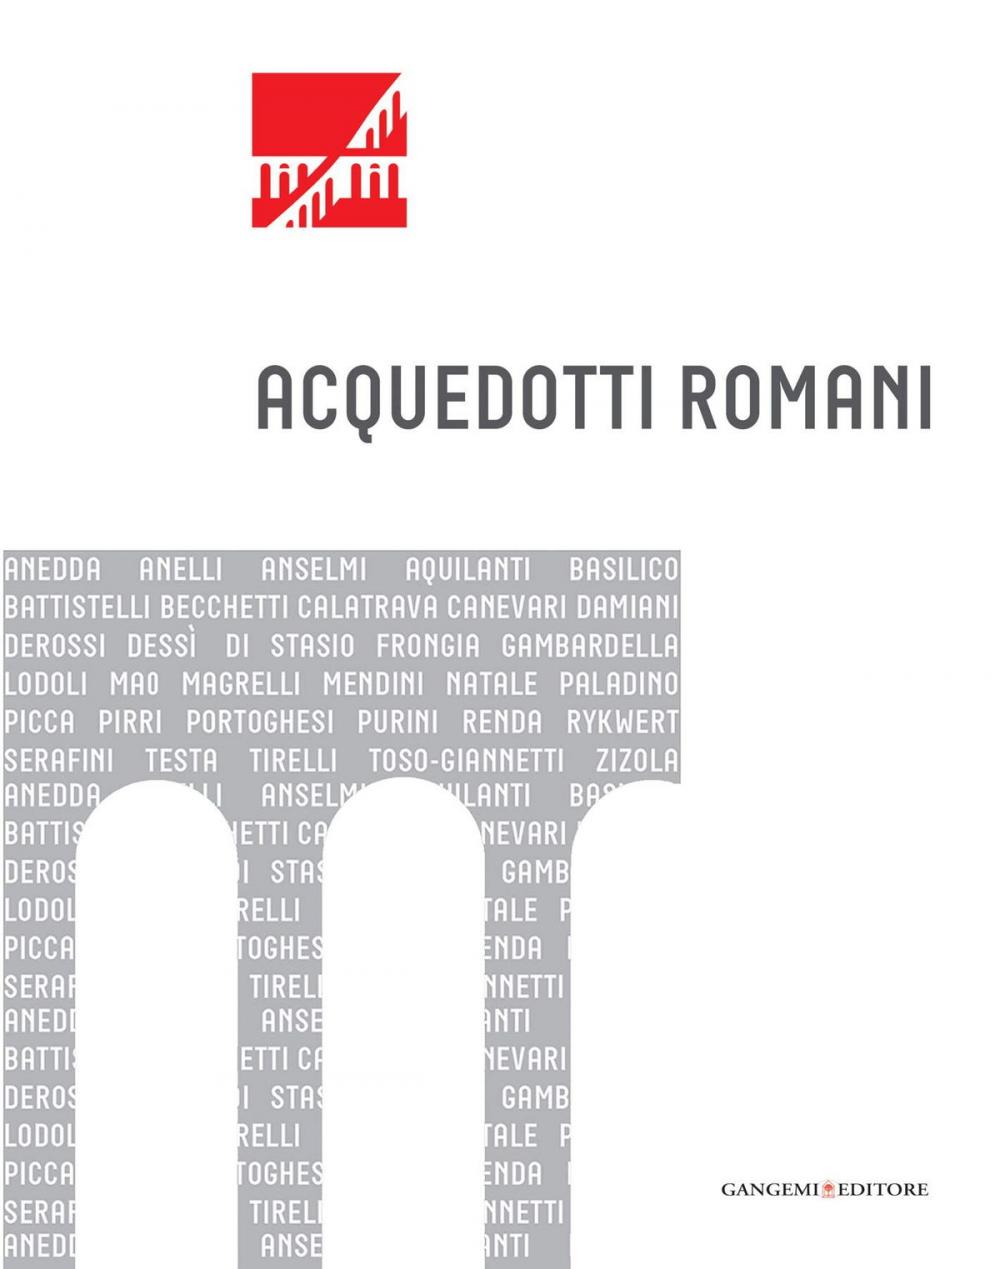 Big bigCover of Acquedotti romani